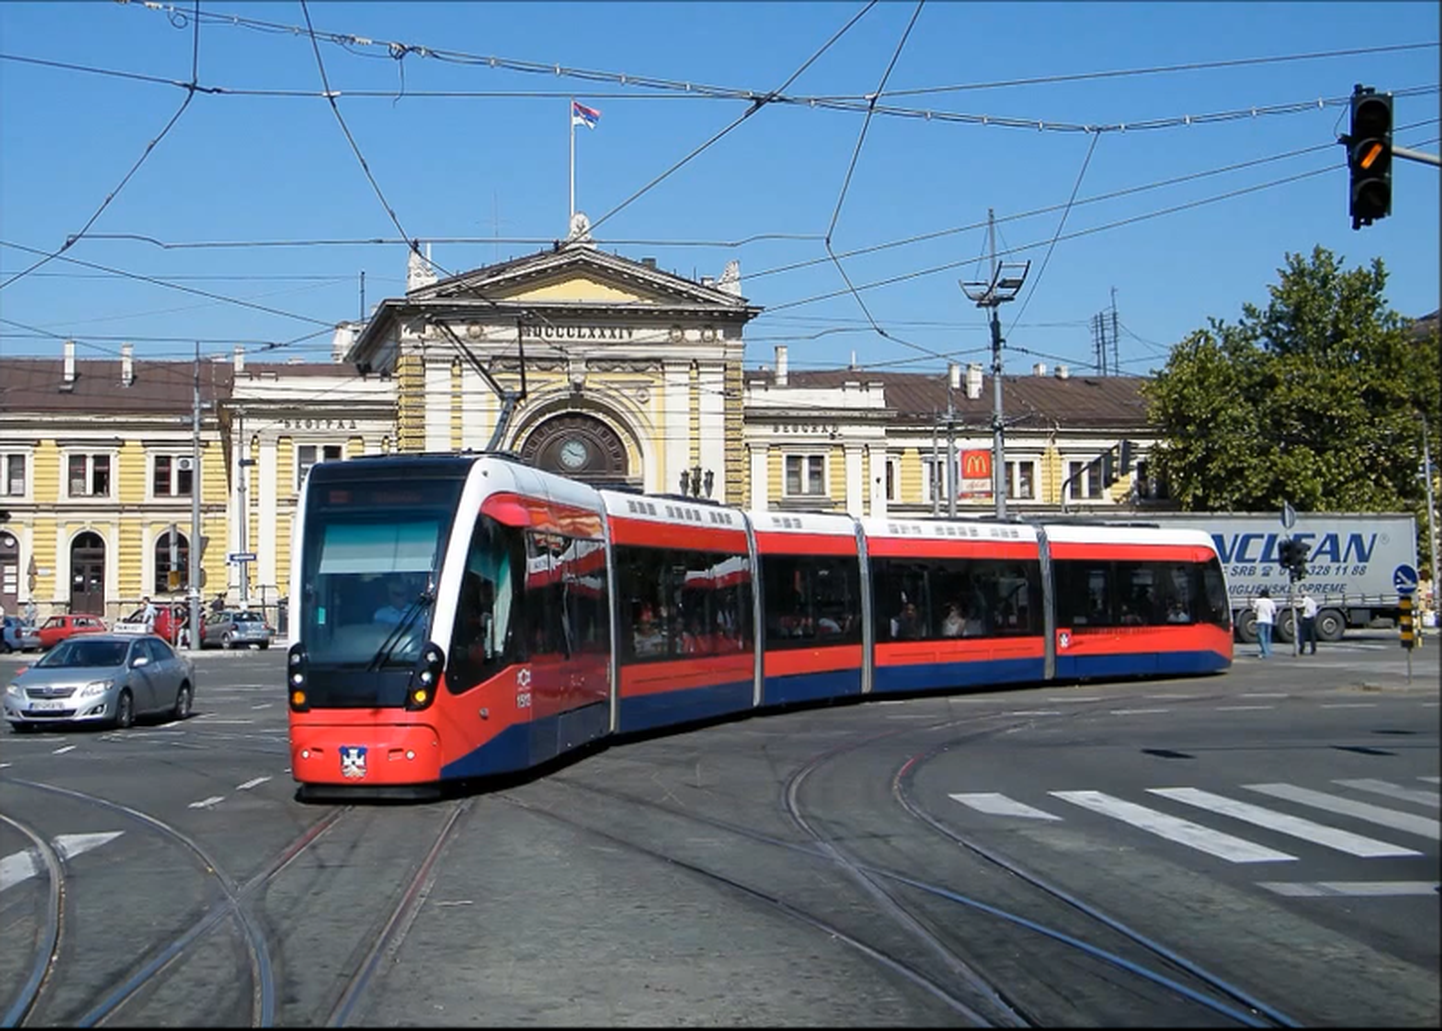 Belgradis sõitev CAFi tramm on tõenäoliselt välimuselt sarnane trammdeiga, mis hakkavad sõitma ka Tallinnas.